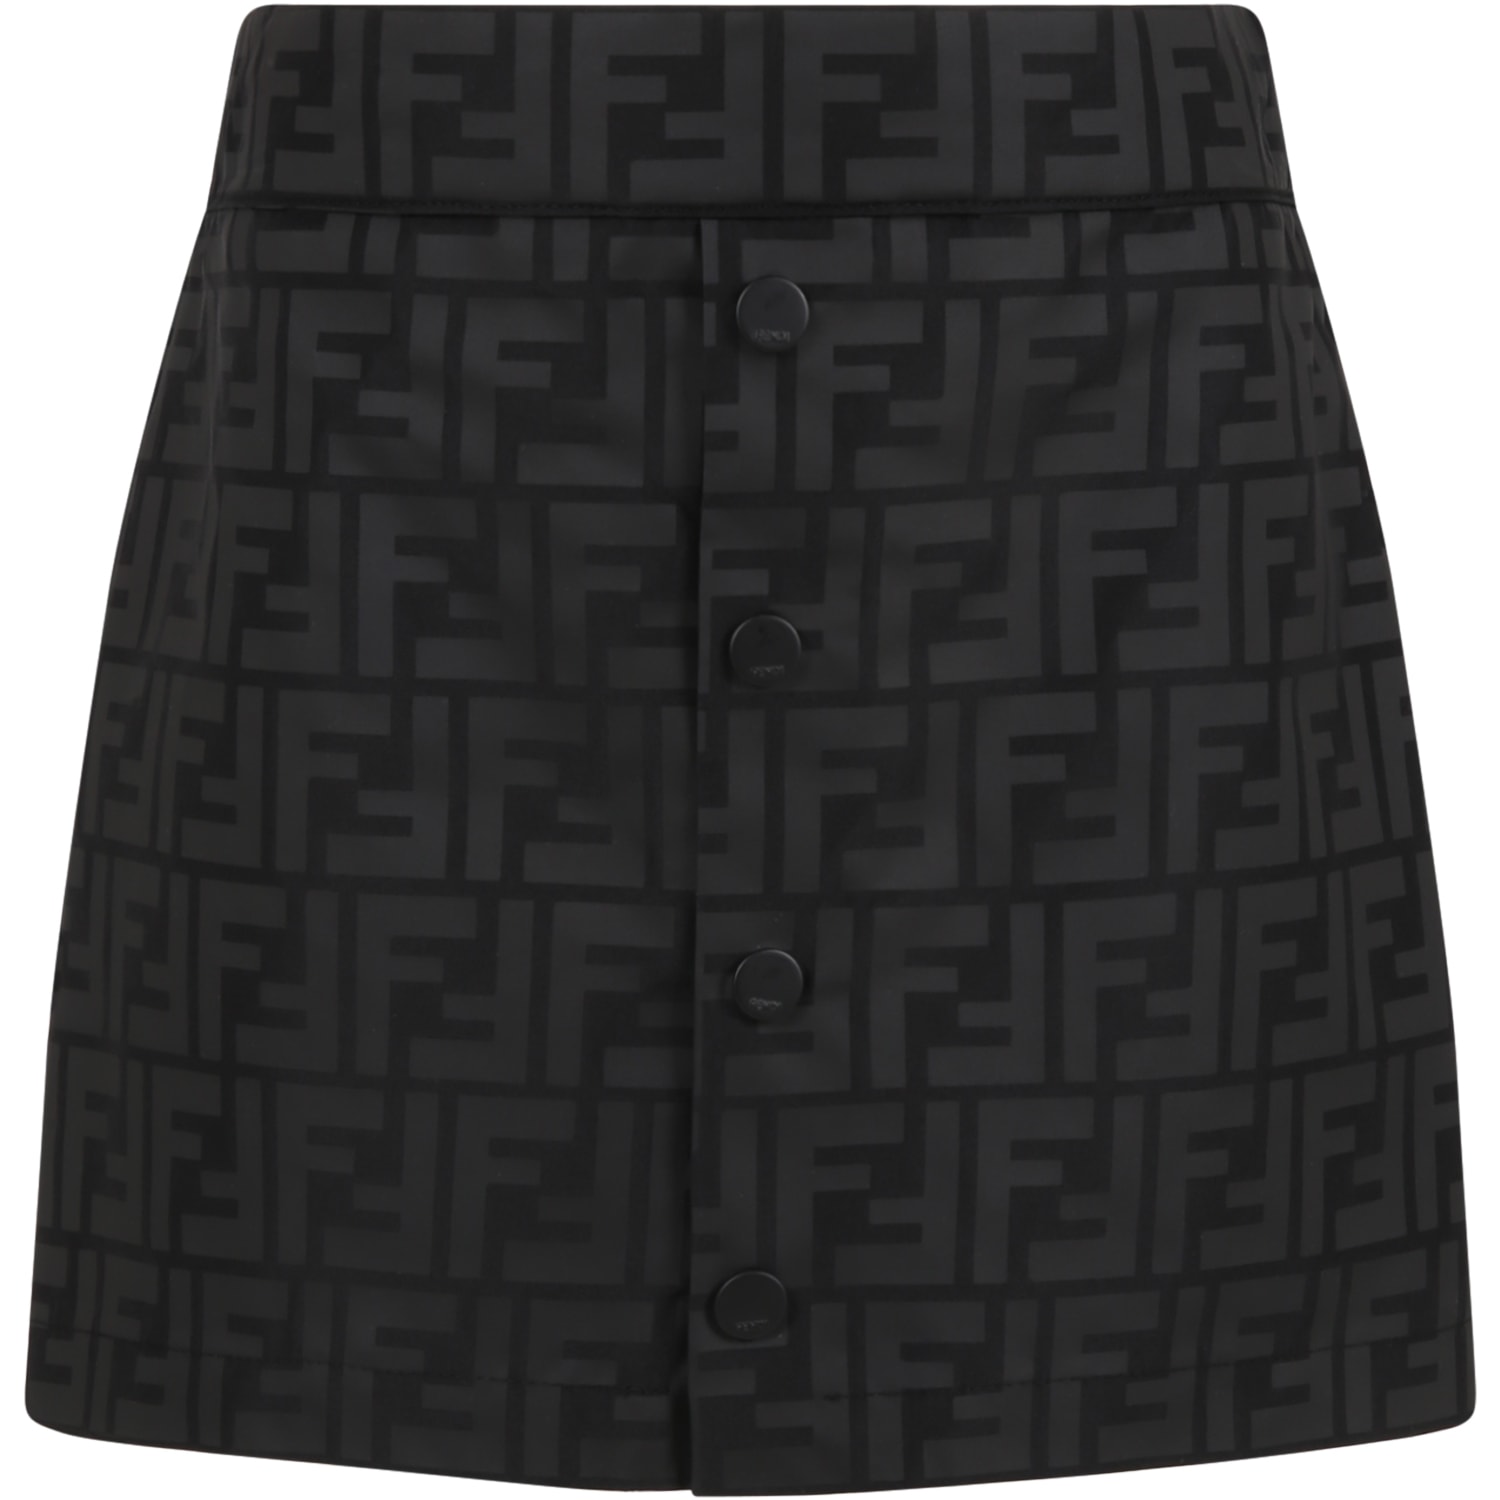 Fendi Black Skirt For Girl With Iconic Ff Logo